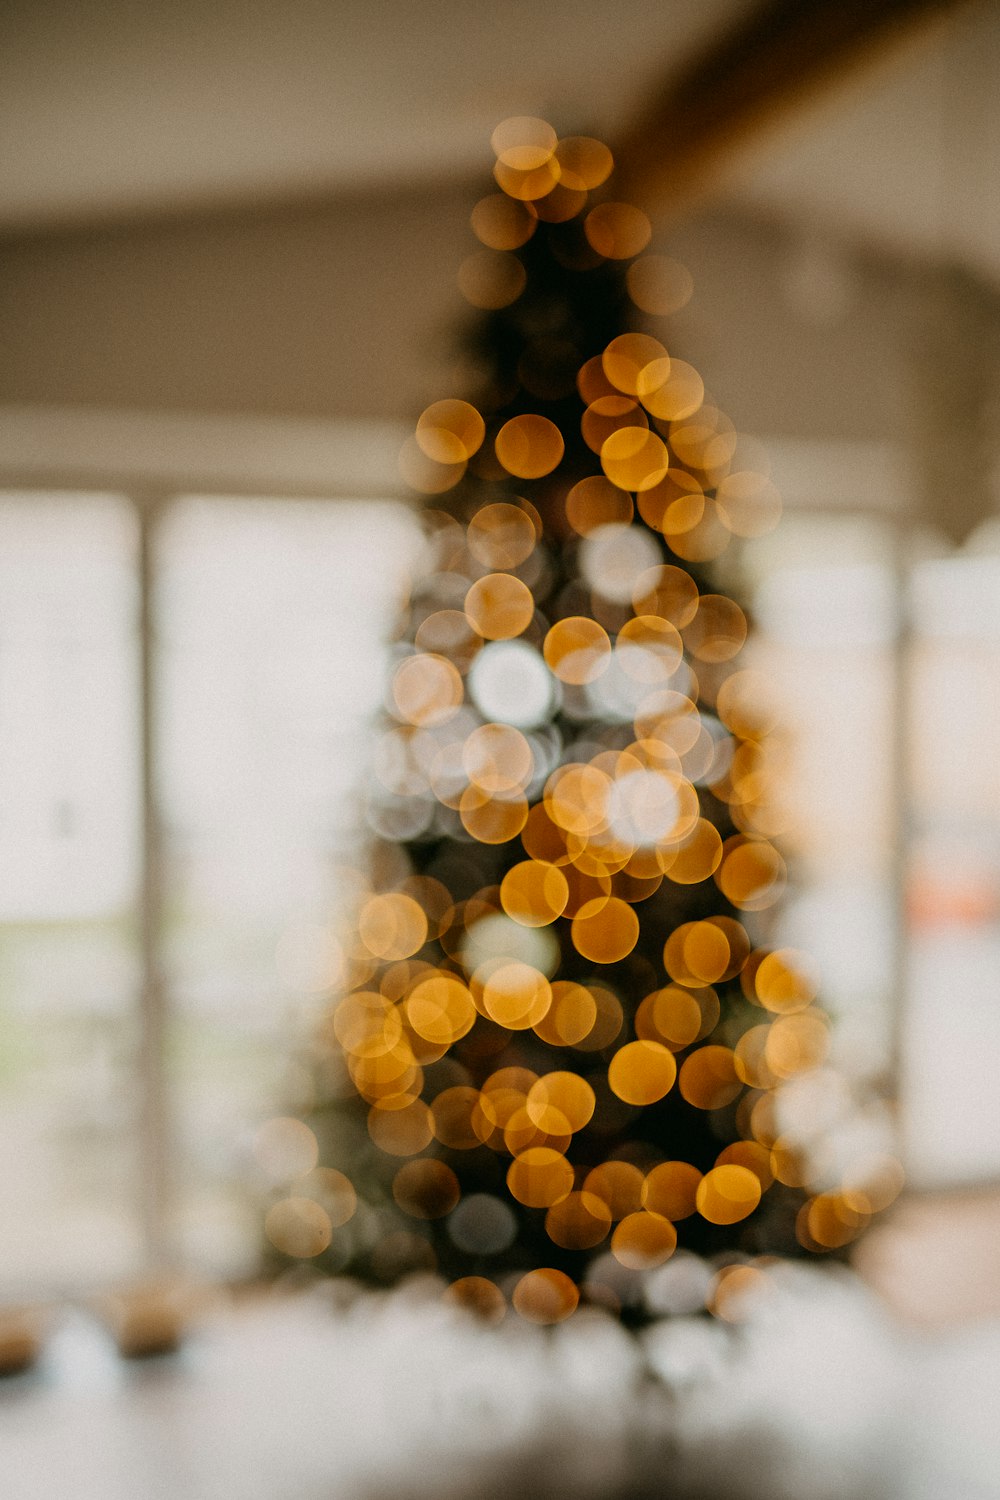 Una foto borrosa de un árbol de Navidad iluminado